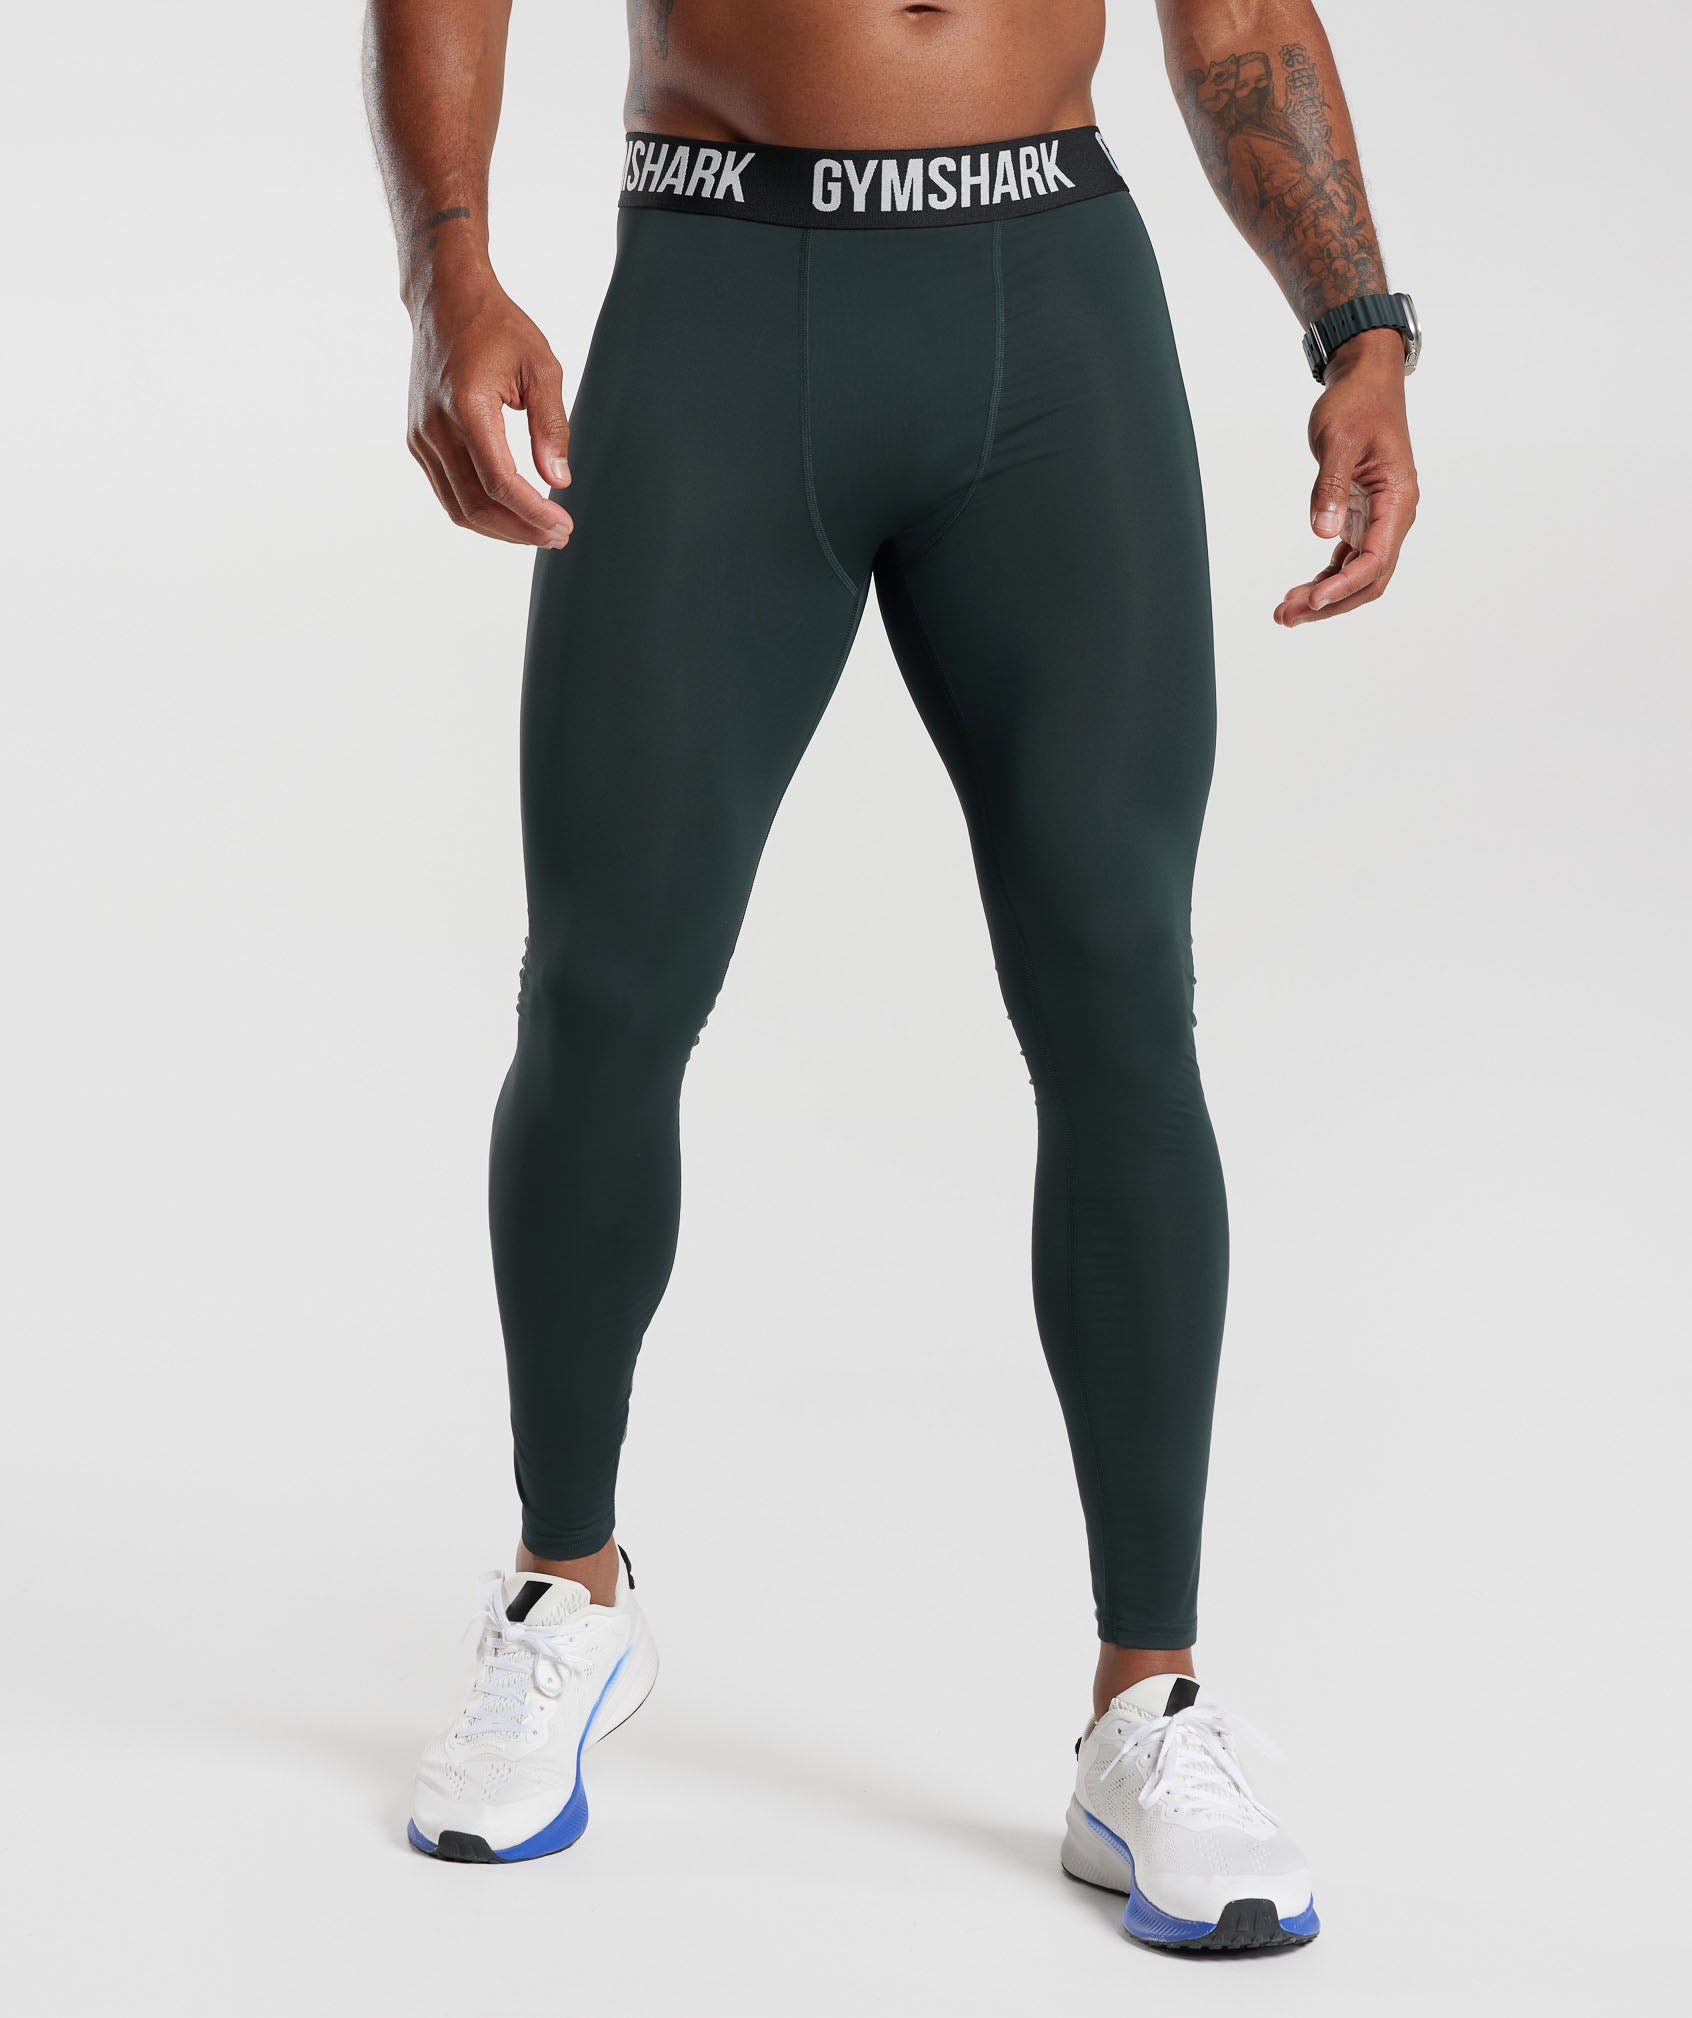 BRAND NEW Gymshark Energy seamless leggings, Men's Fashion